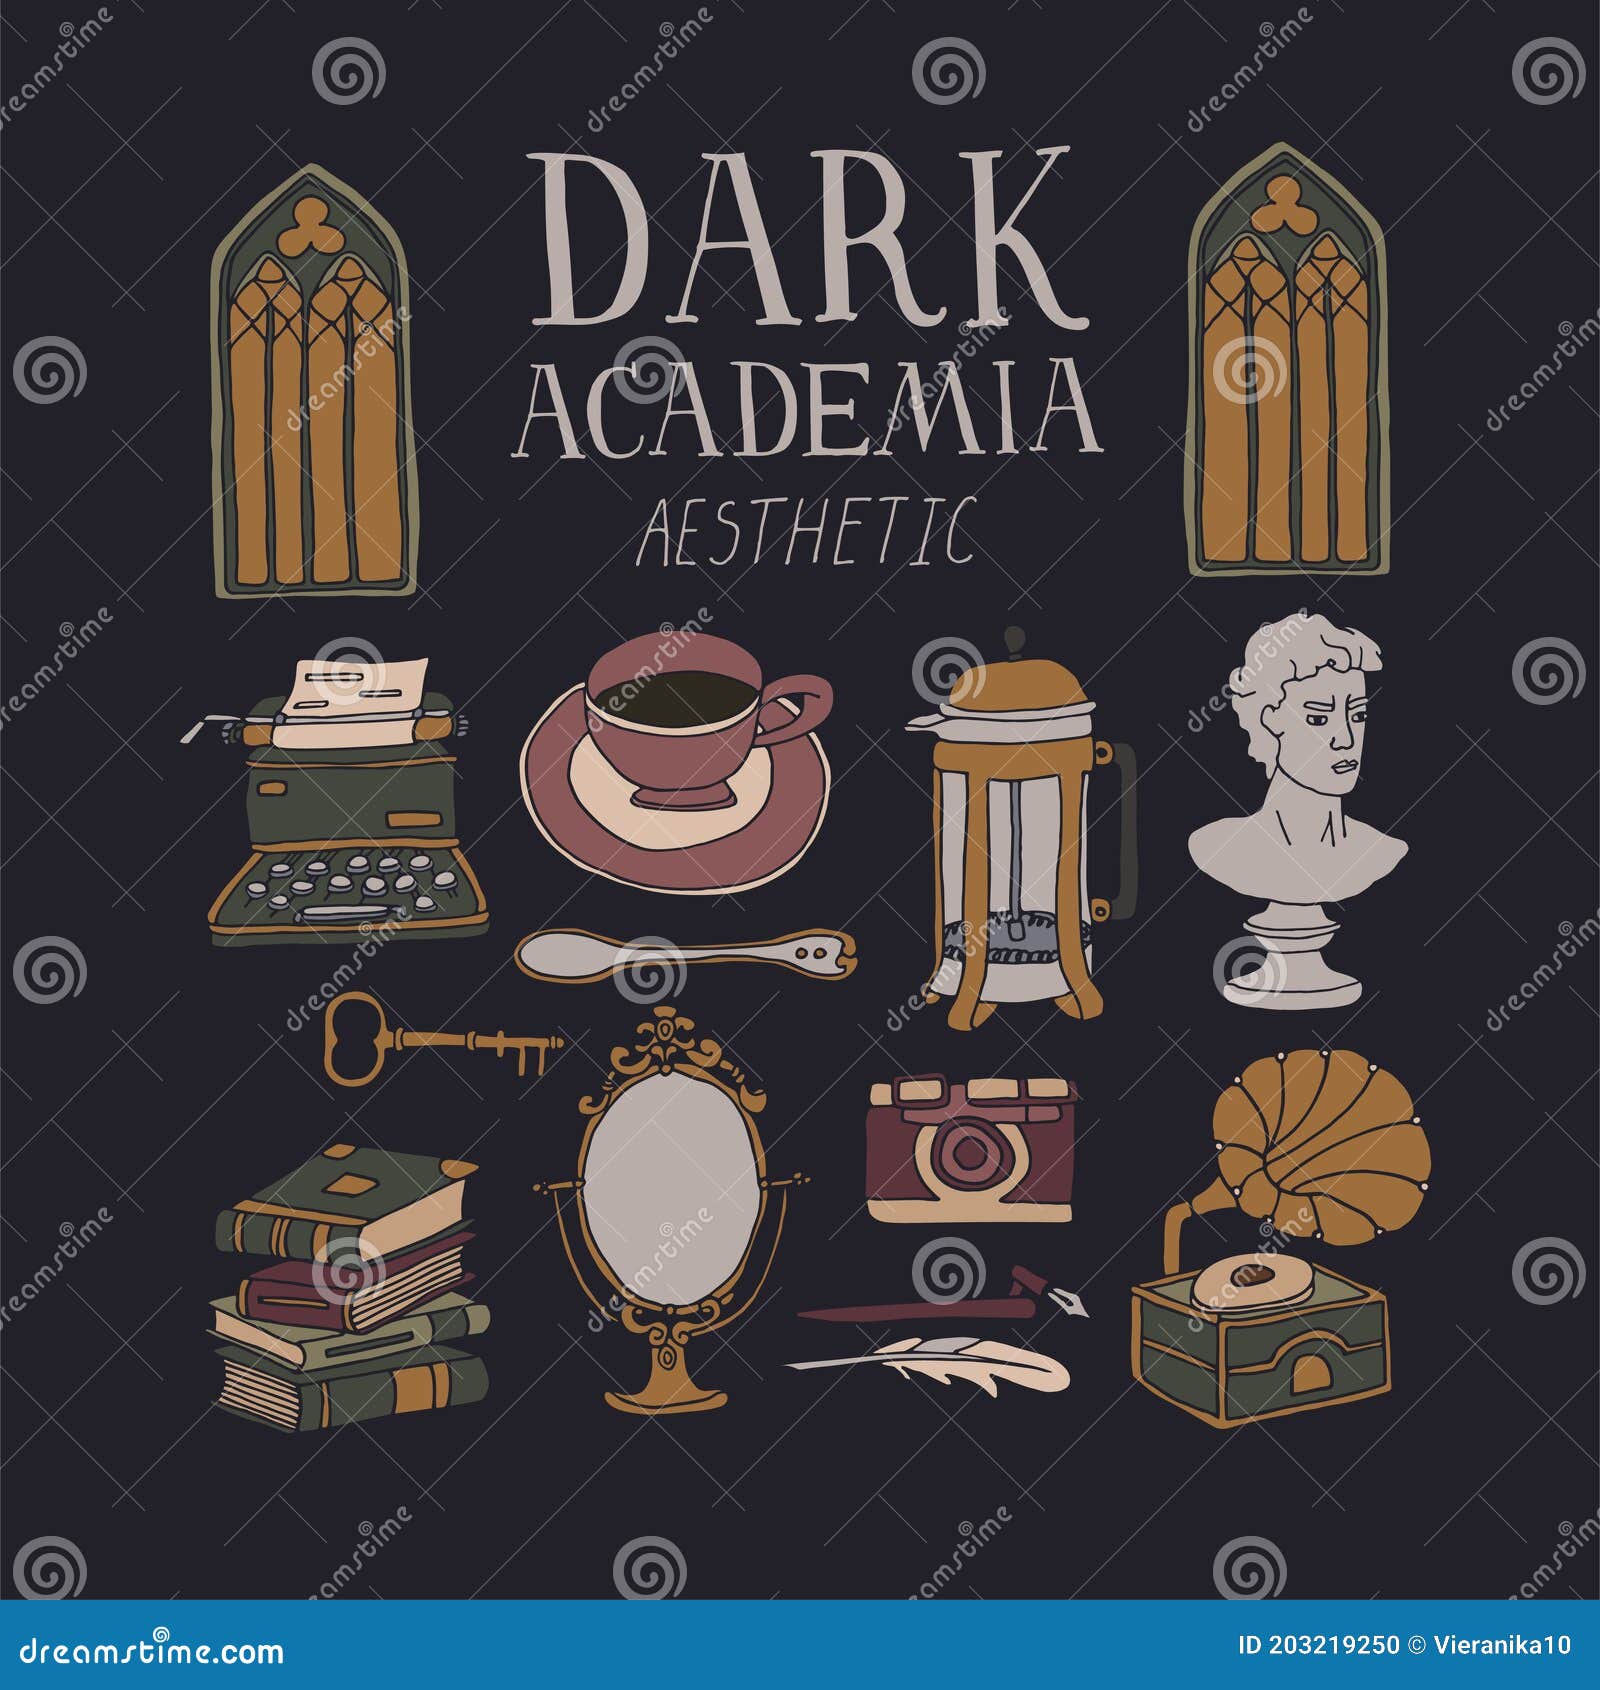 Dark Academia Poster Set / Dark Academia Poster / Dark Academia Aesthetic /  Light Academia Poster / Dark Academia / Aesthetic Poster 